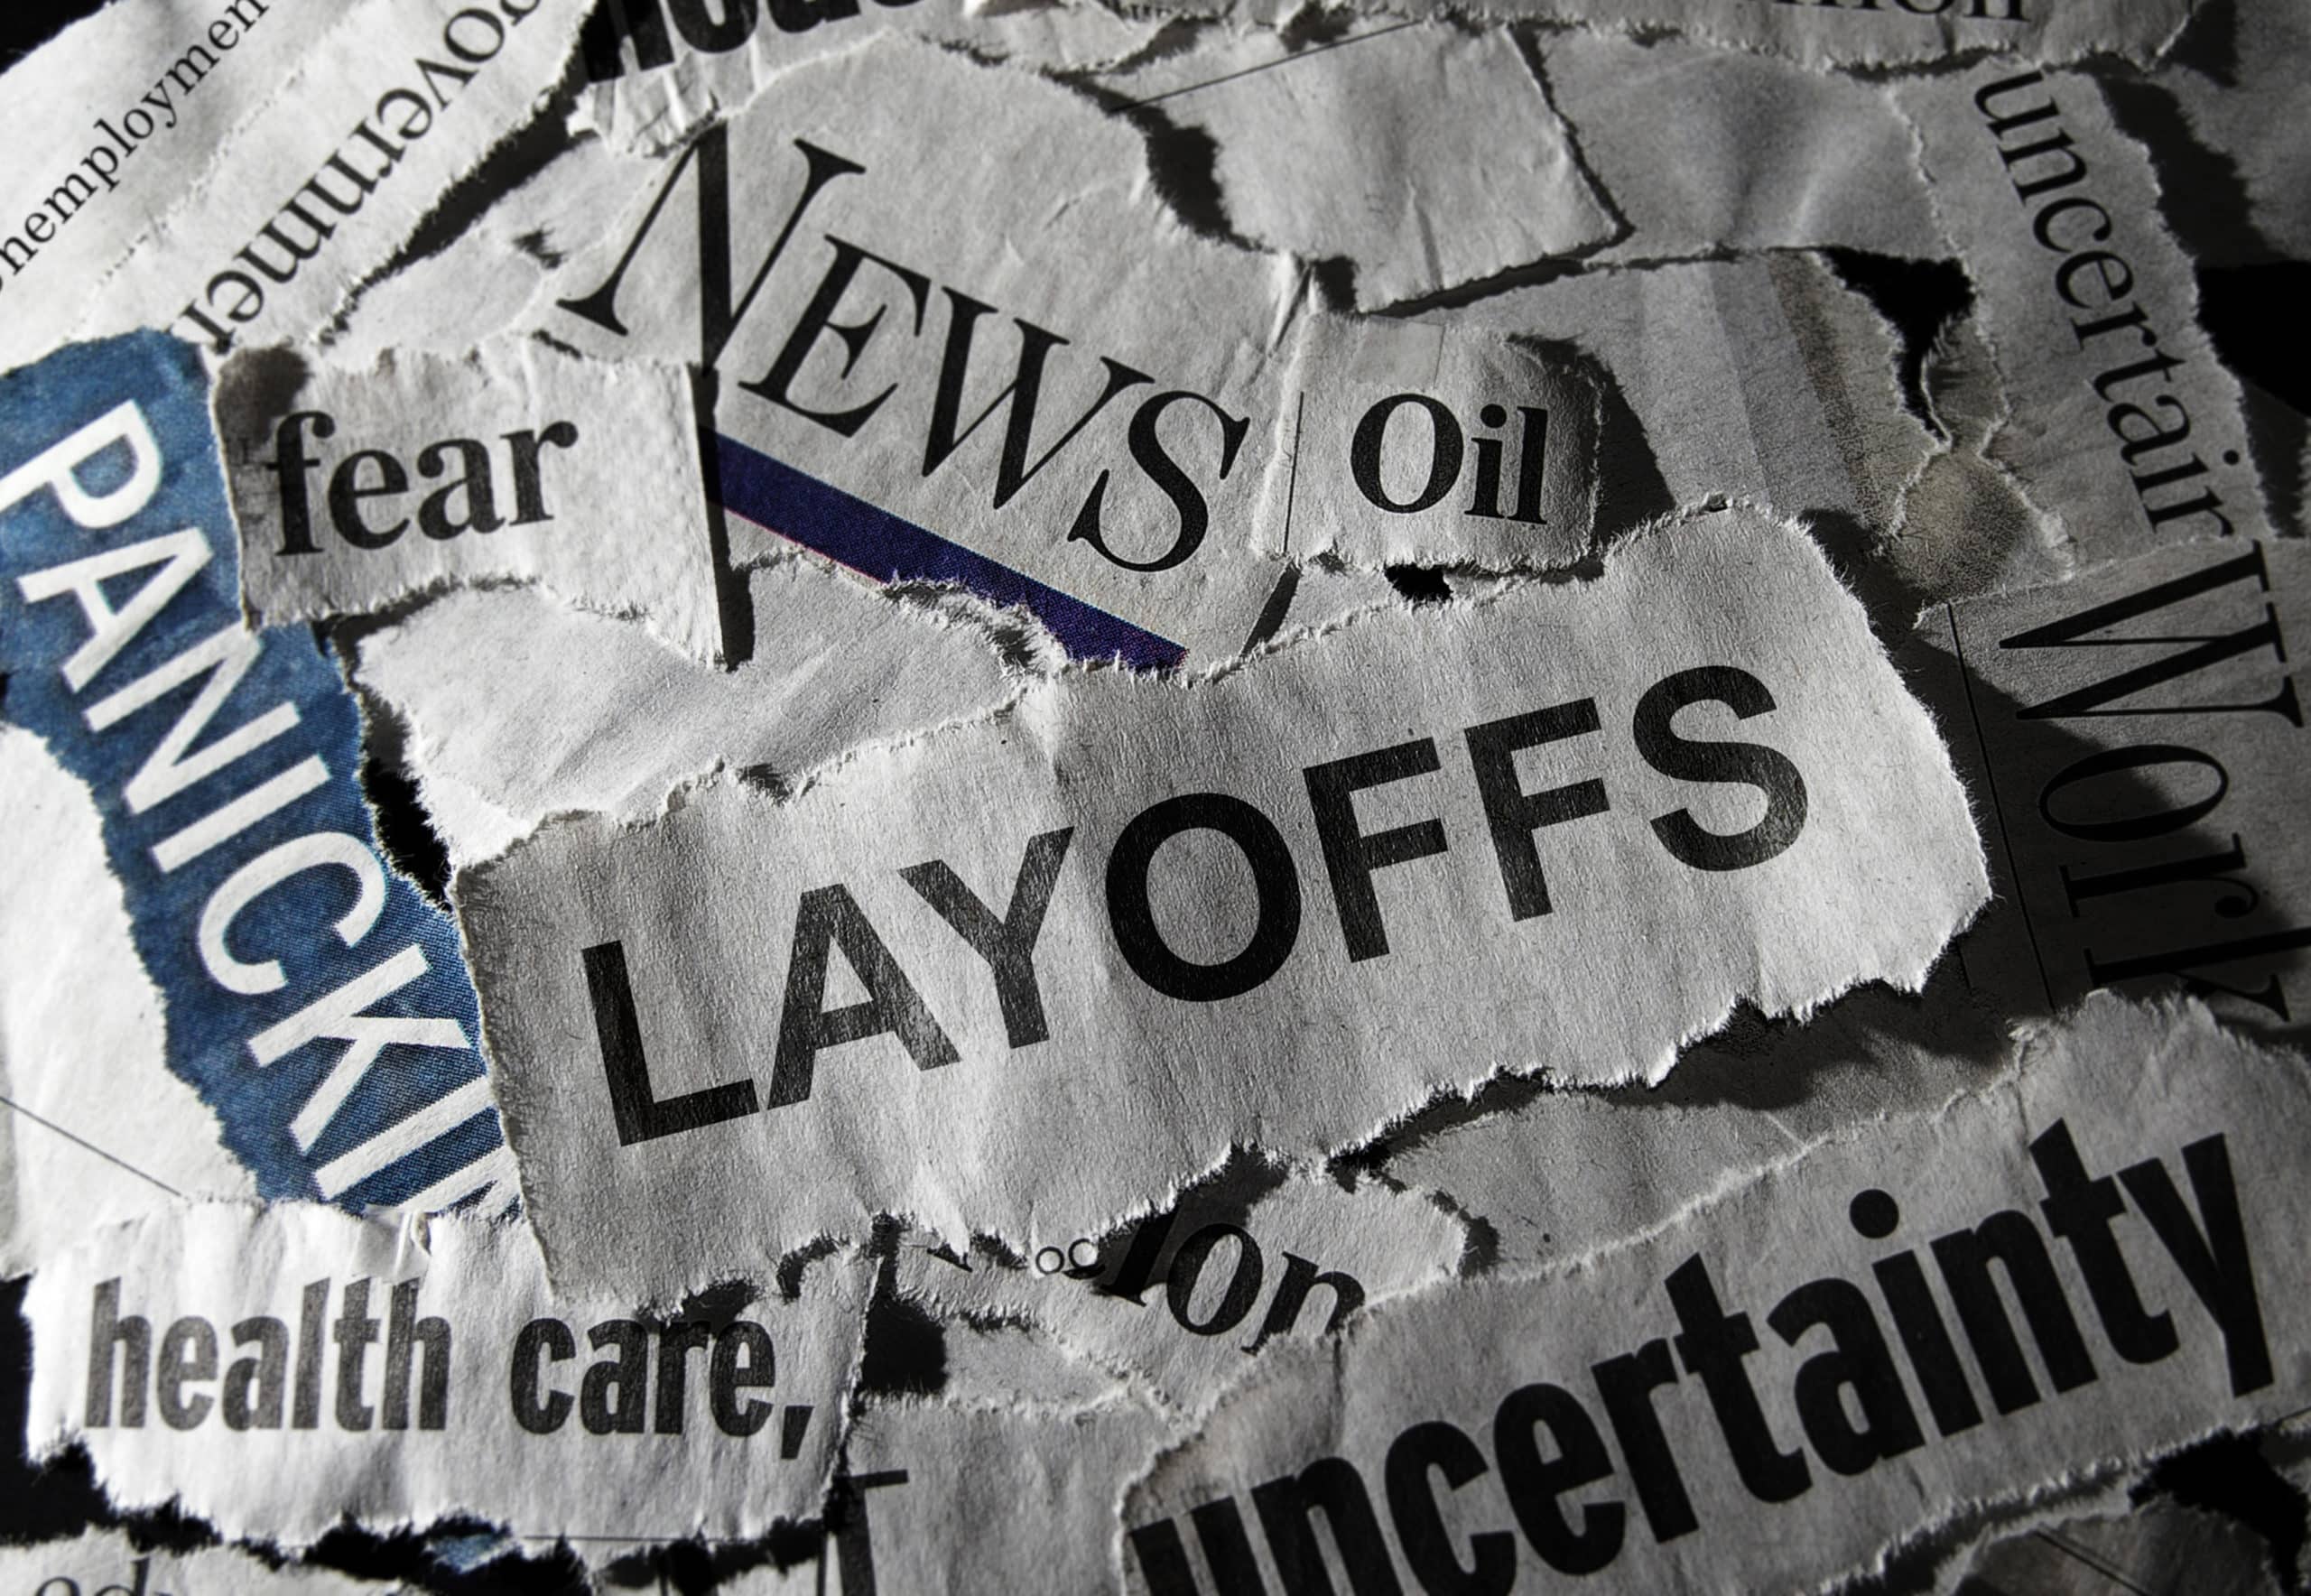 Layoffs in news headlines